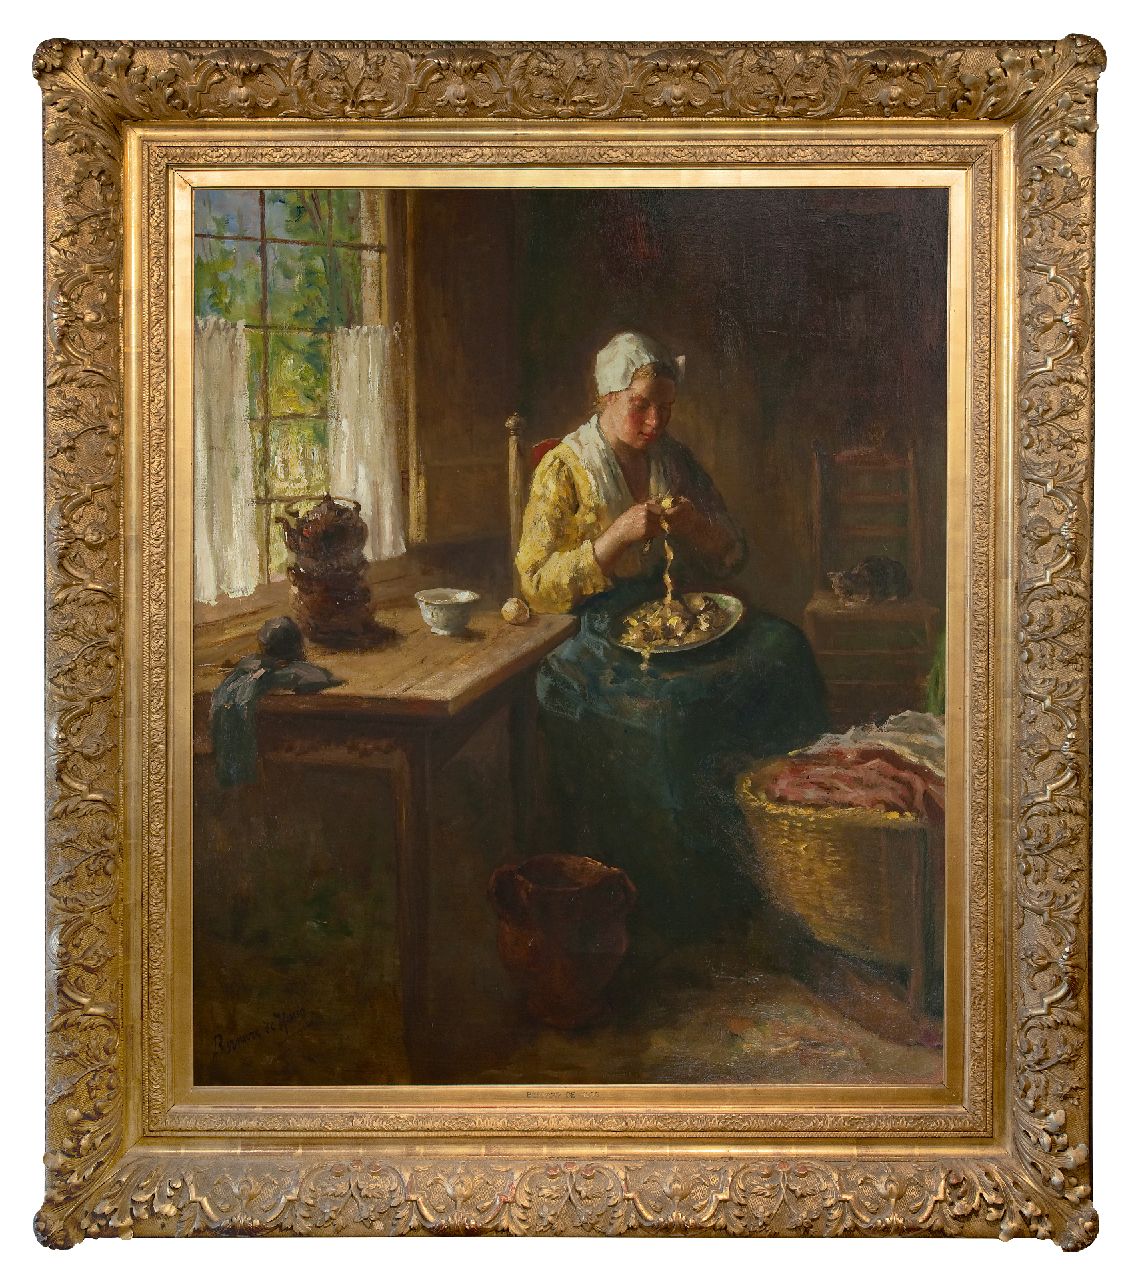 Hoog J.B. de | Johan 'Bernard' de Hoog | Schilderijen te koop aangeboden | Aardappels schillen, olieverf op doek 120,3 x 100,3 cm, gesigneerd linksonder